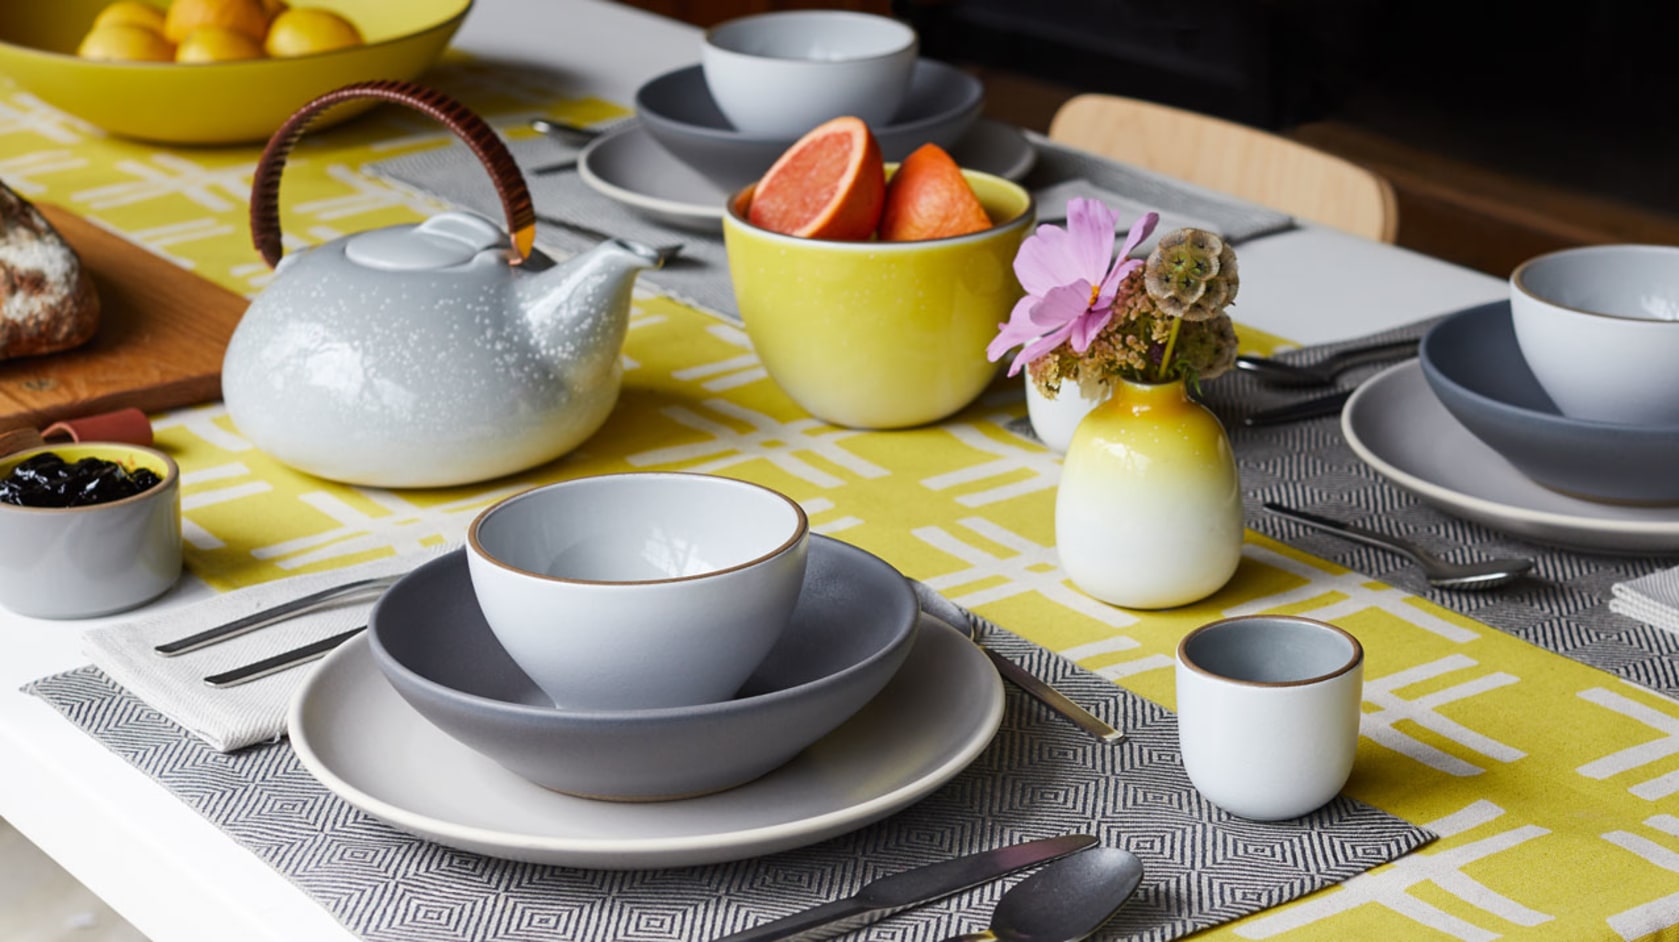 Cafetière 2-cup – Heath Ceramics